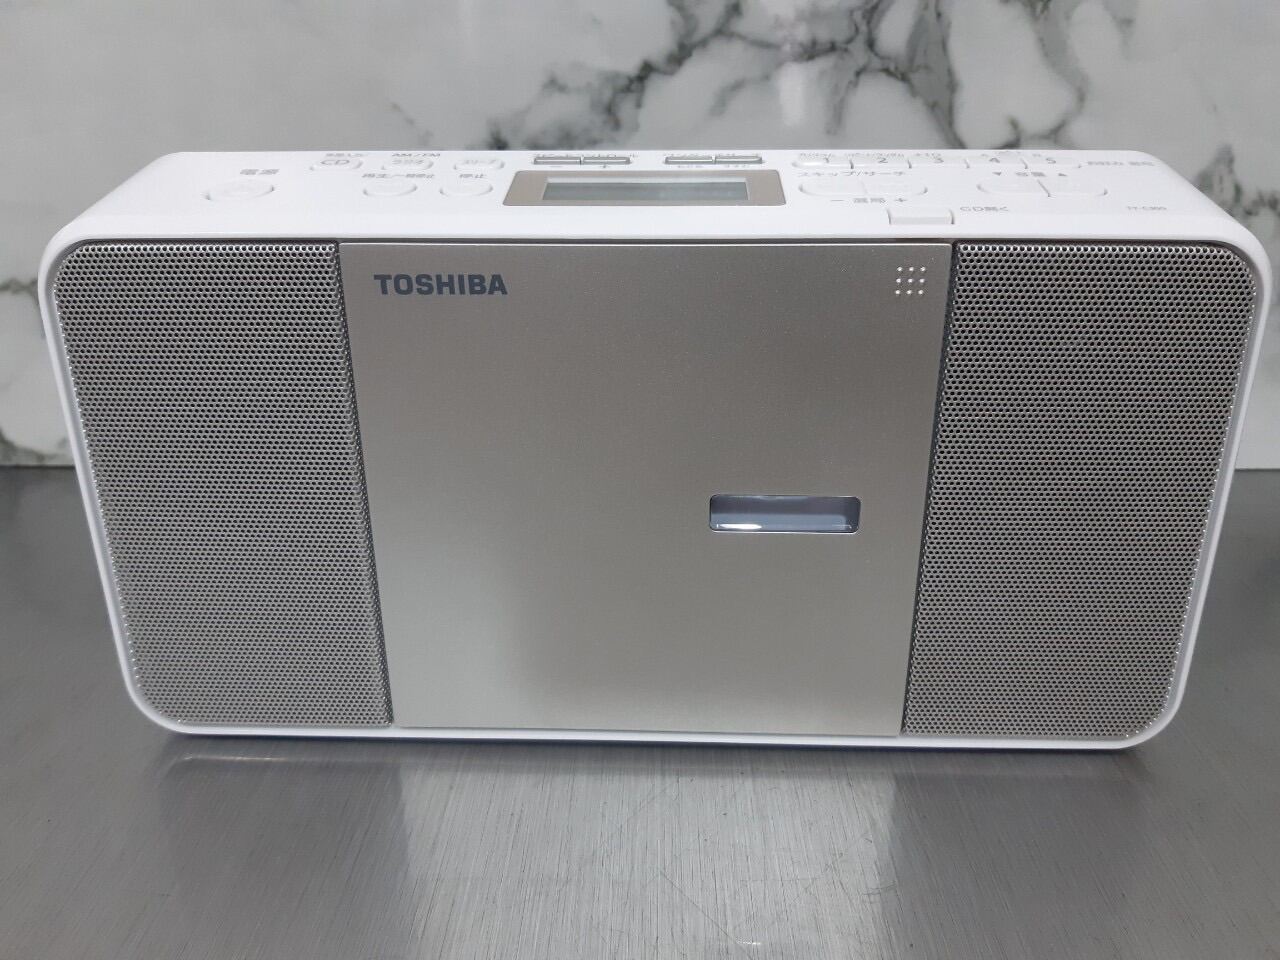 Đài đĩa CD Radio Toshiba TY-C300 - Hàng sản xuất cho thị trường nội địa Nhật chạy điện 100V thumbnail